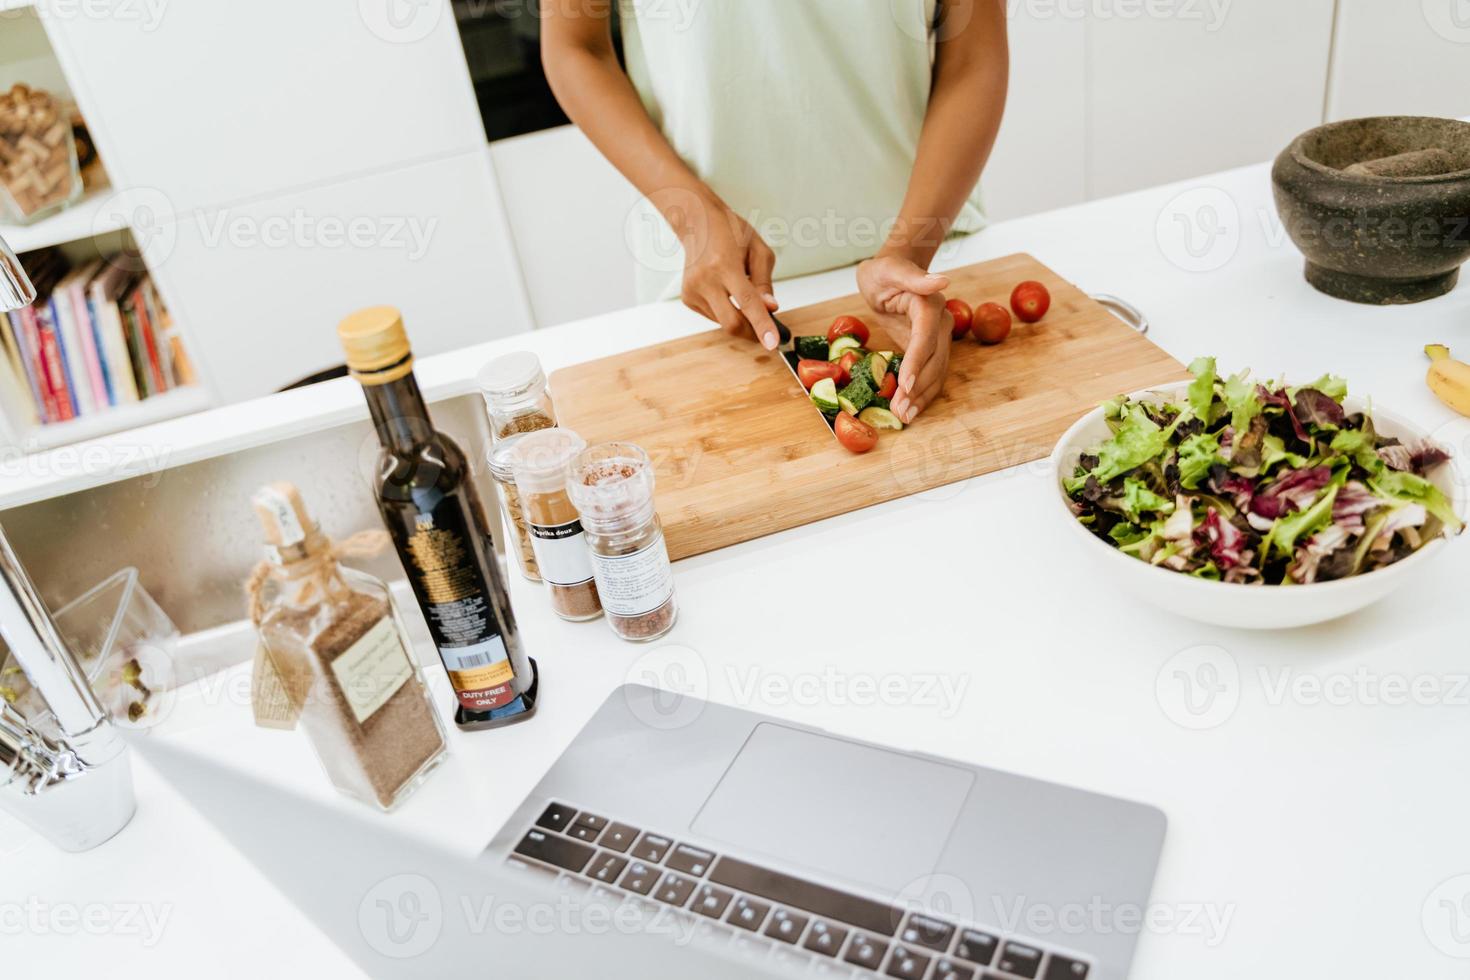 Joven negra haciendo ensalada mientras usa el portátil en la cocina foto